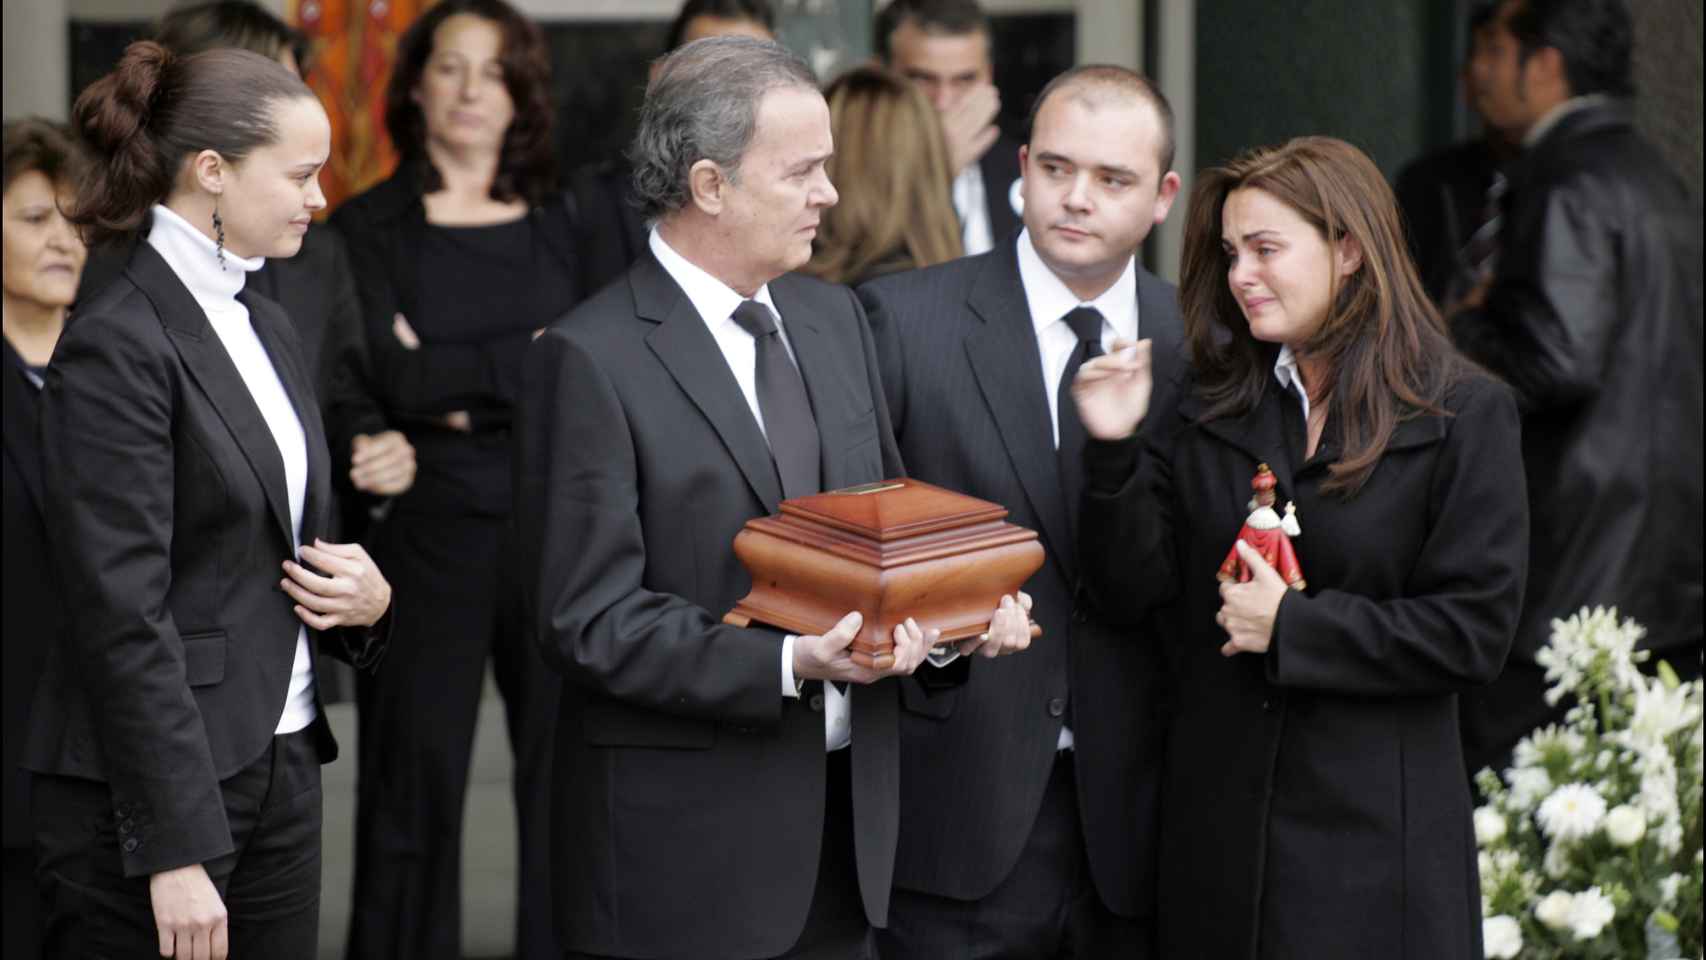 De izquierda a derecha: Shaila Dúrcal, Antonio Morales, Rocío Morales y Antonio Morales en el funeral de Rocío Dúrcal.